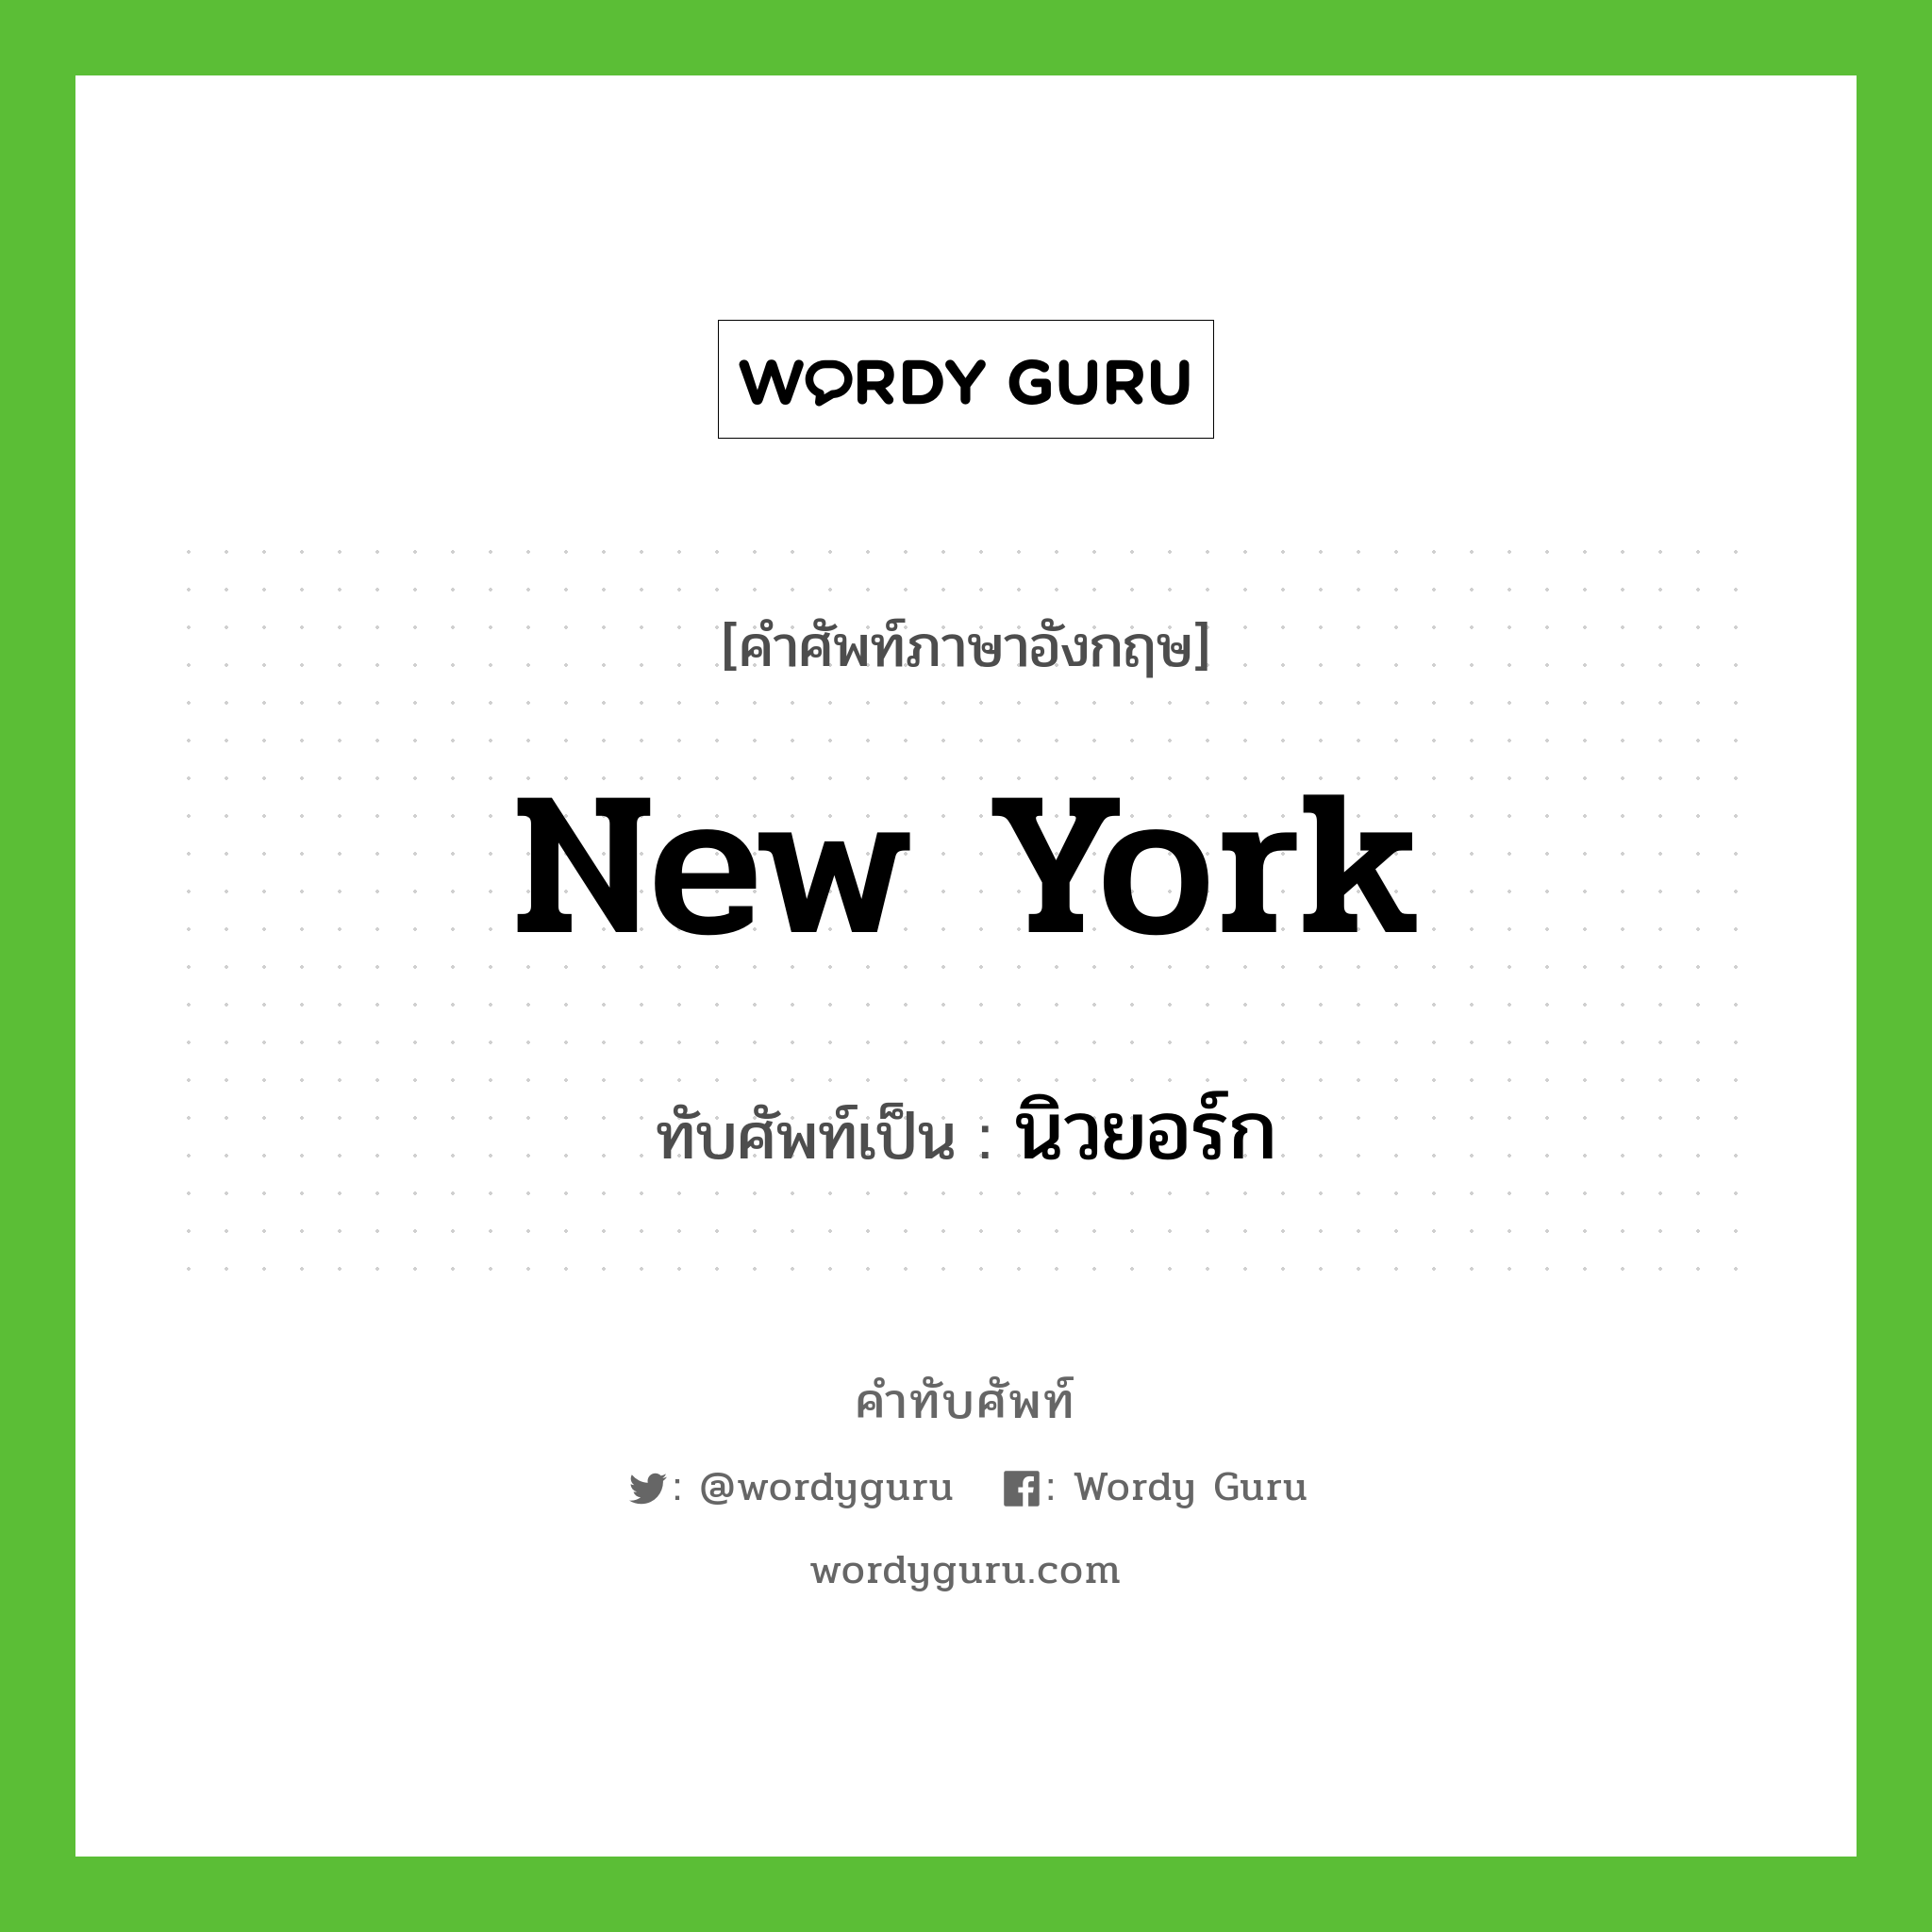 New York เขียนเป็นคำไทยว่าอะไร?, คำศัพท์ภาษาอังกฤษ New York ทับศัพท์เป็น นิวยอร์ก